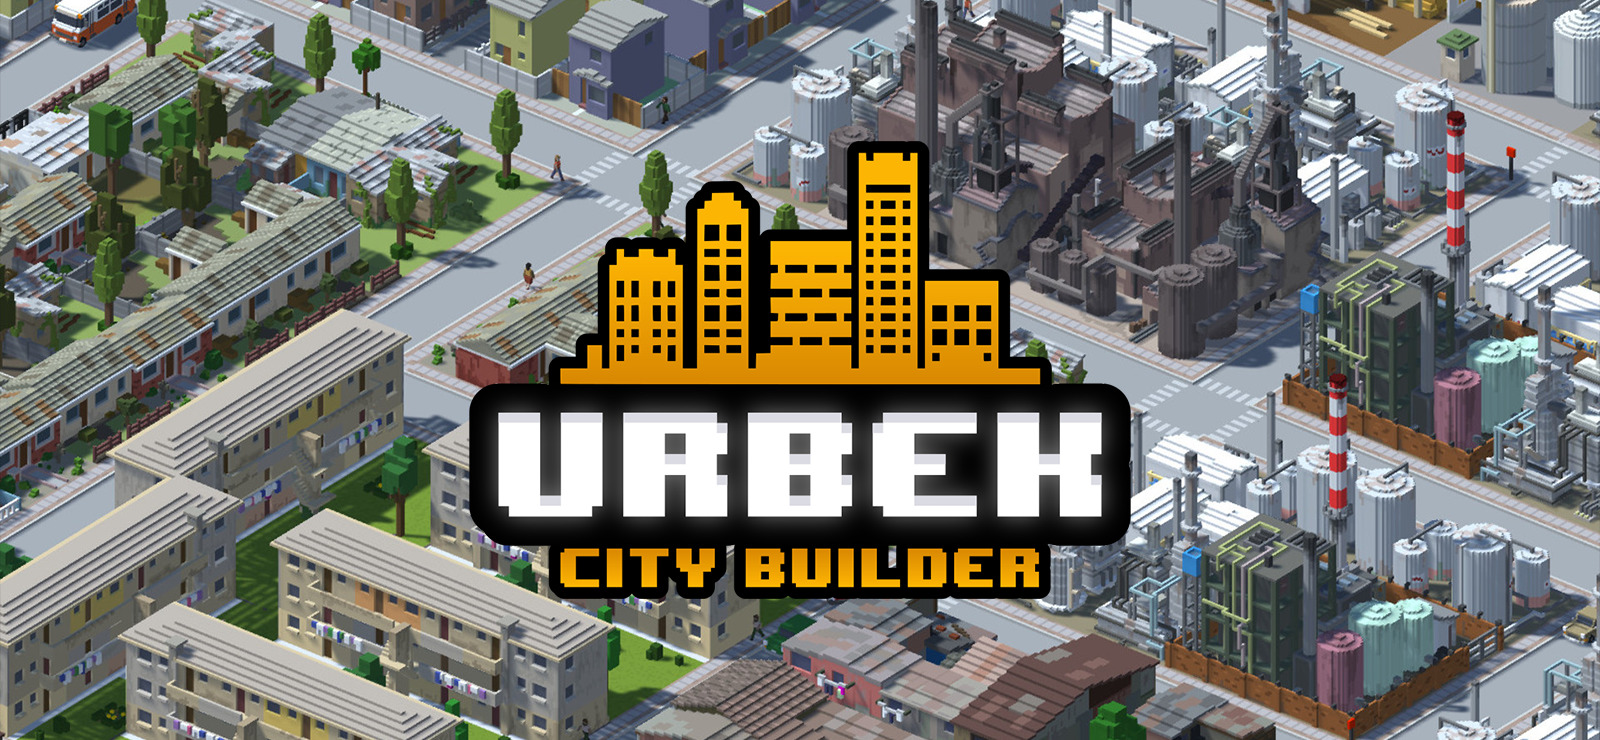 Urbek City Builder no Steam